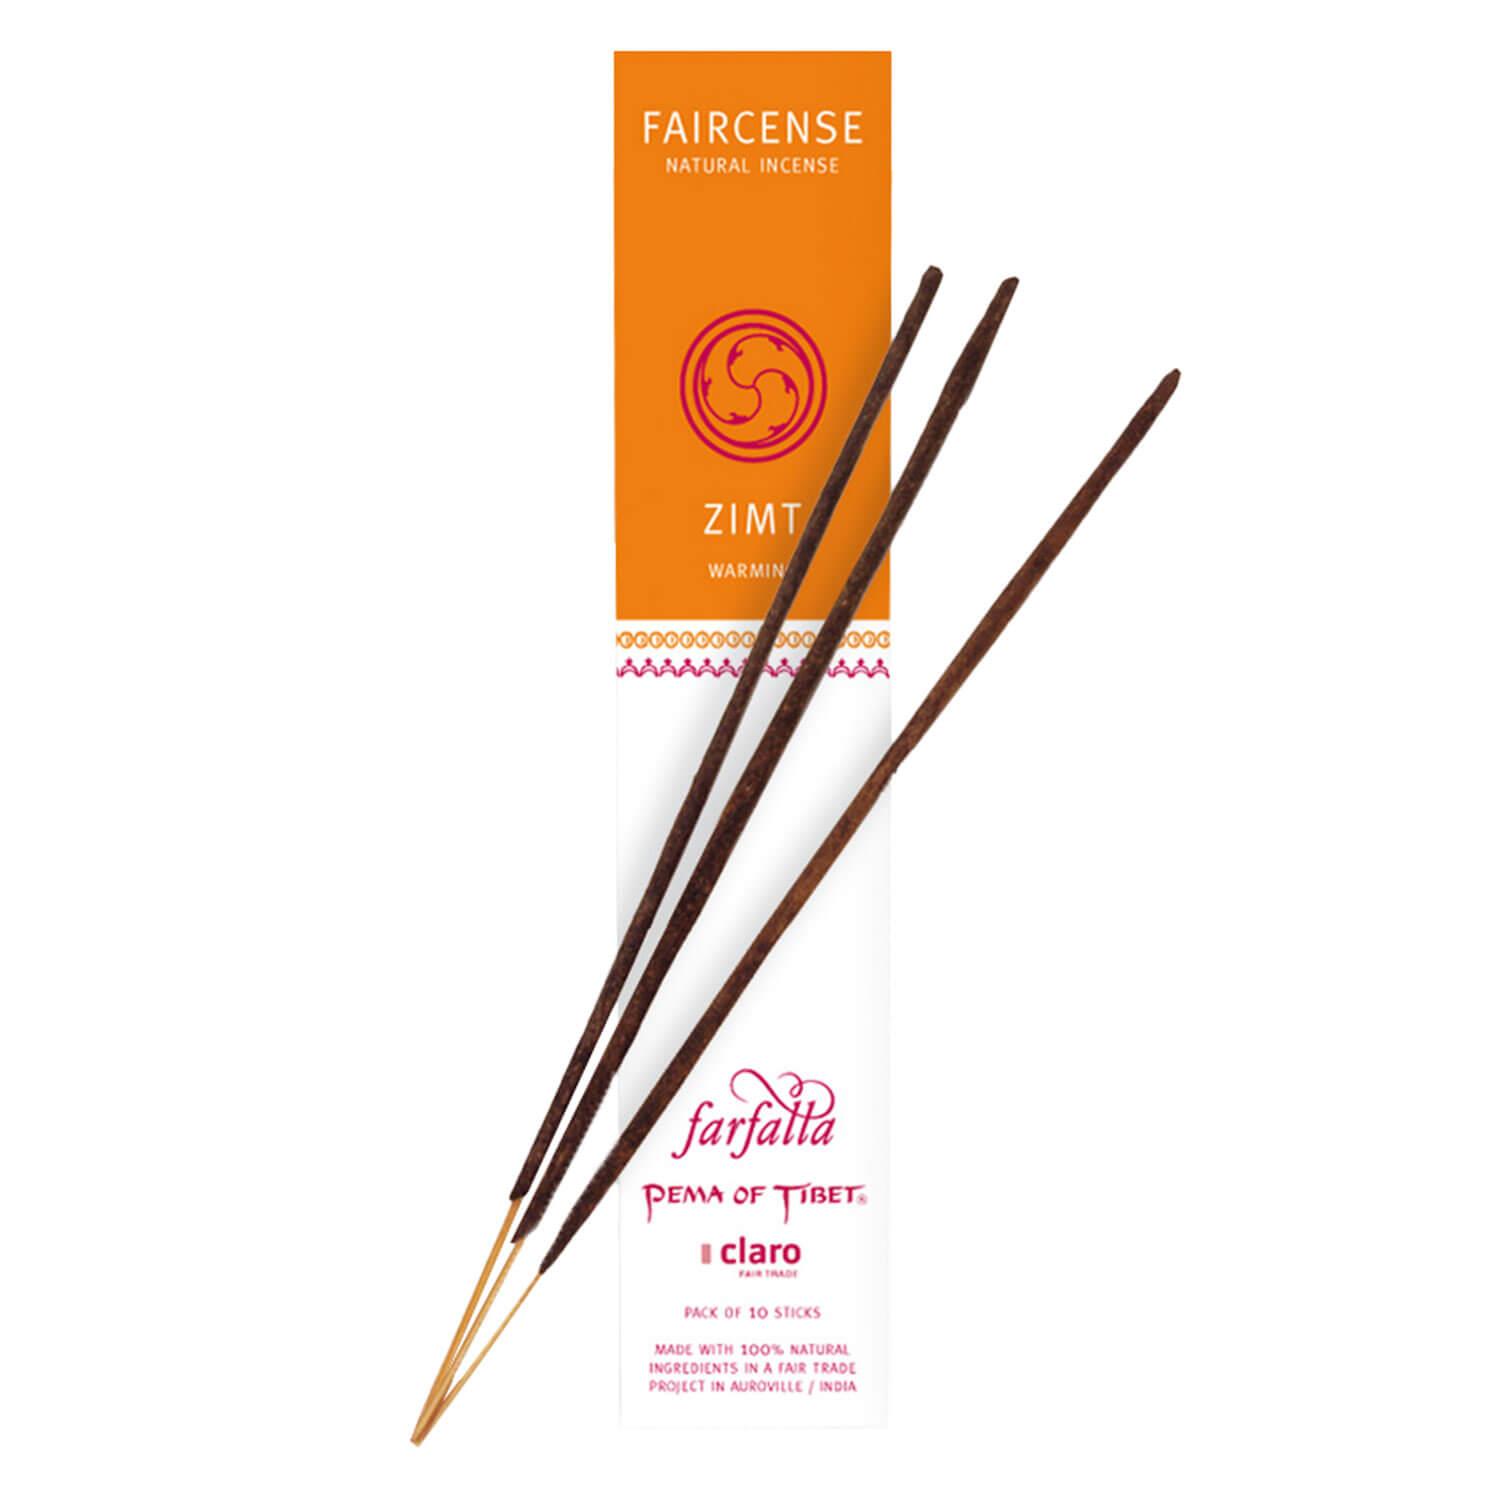 Farfalla Räucherstäbchen - Cinnamon/Warming - Faircense Incense Sticks